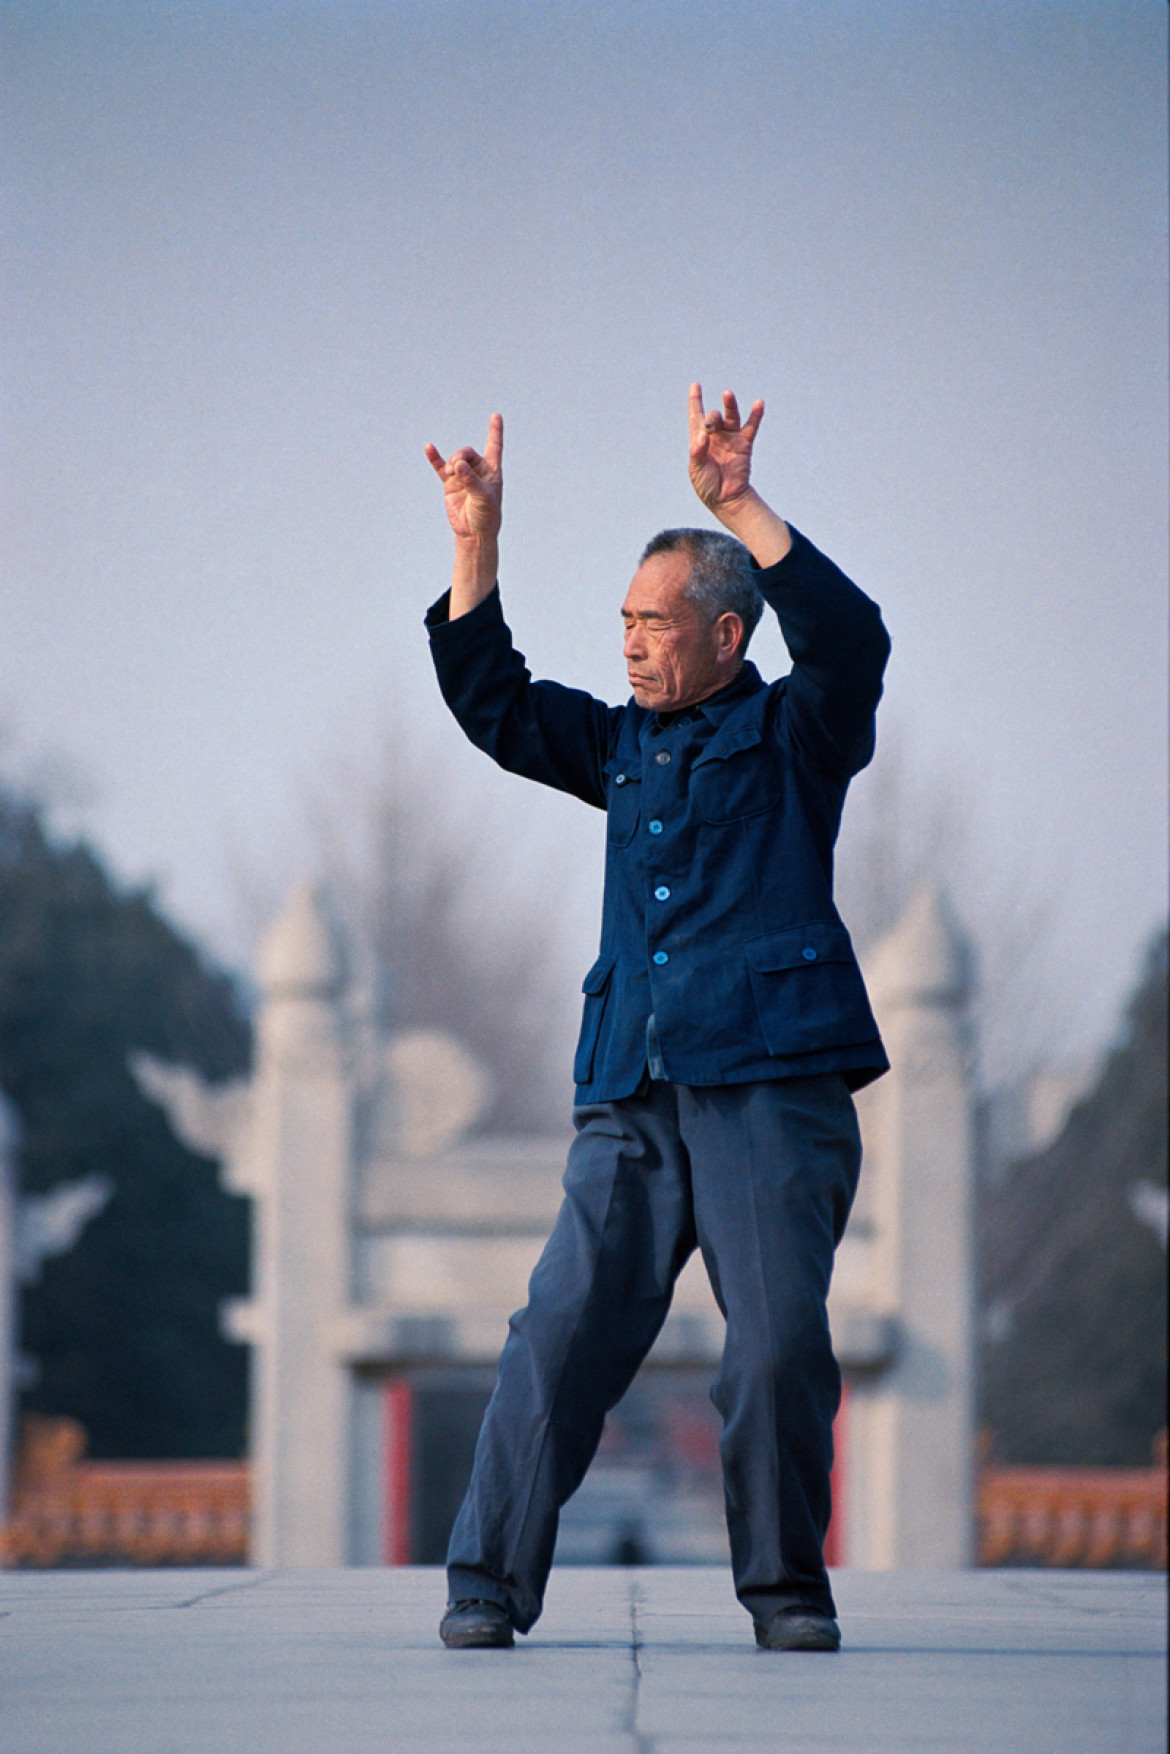 fot. Krzysztof Miller, Chiny, Pekin, 20.03.1993
Świątynia Ziemi, gdzie ludzie ćwiczą tai-chi – prastarą sztukę walki i medytacji